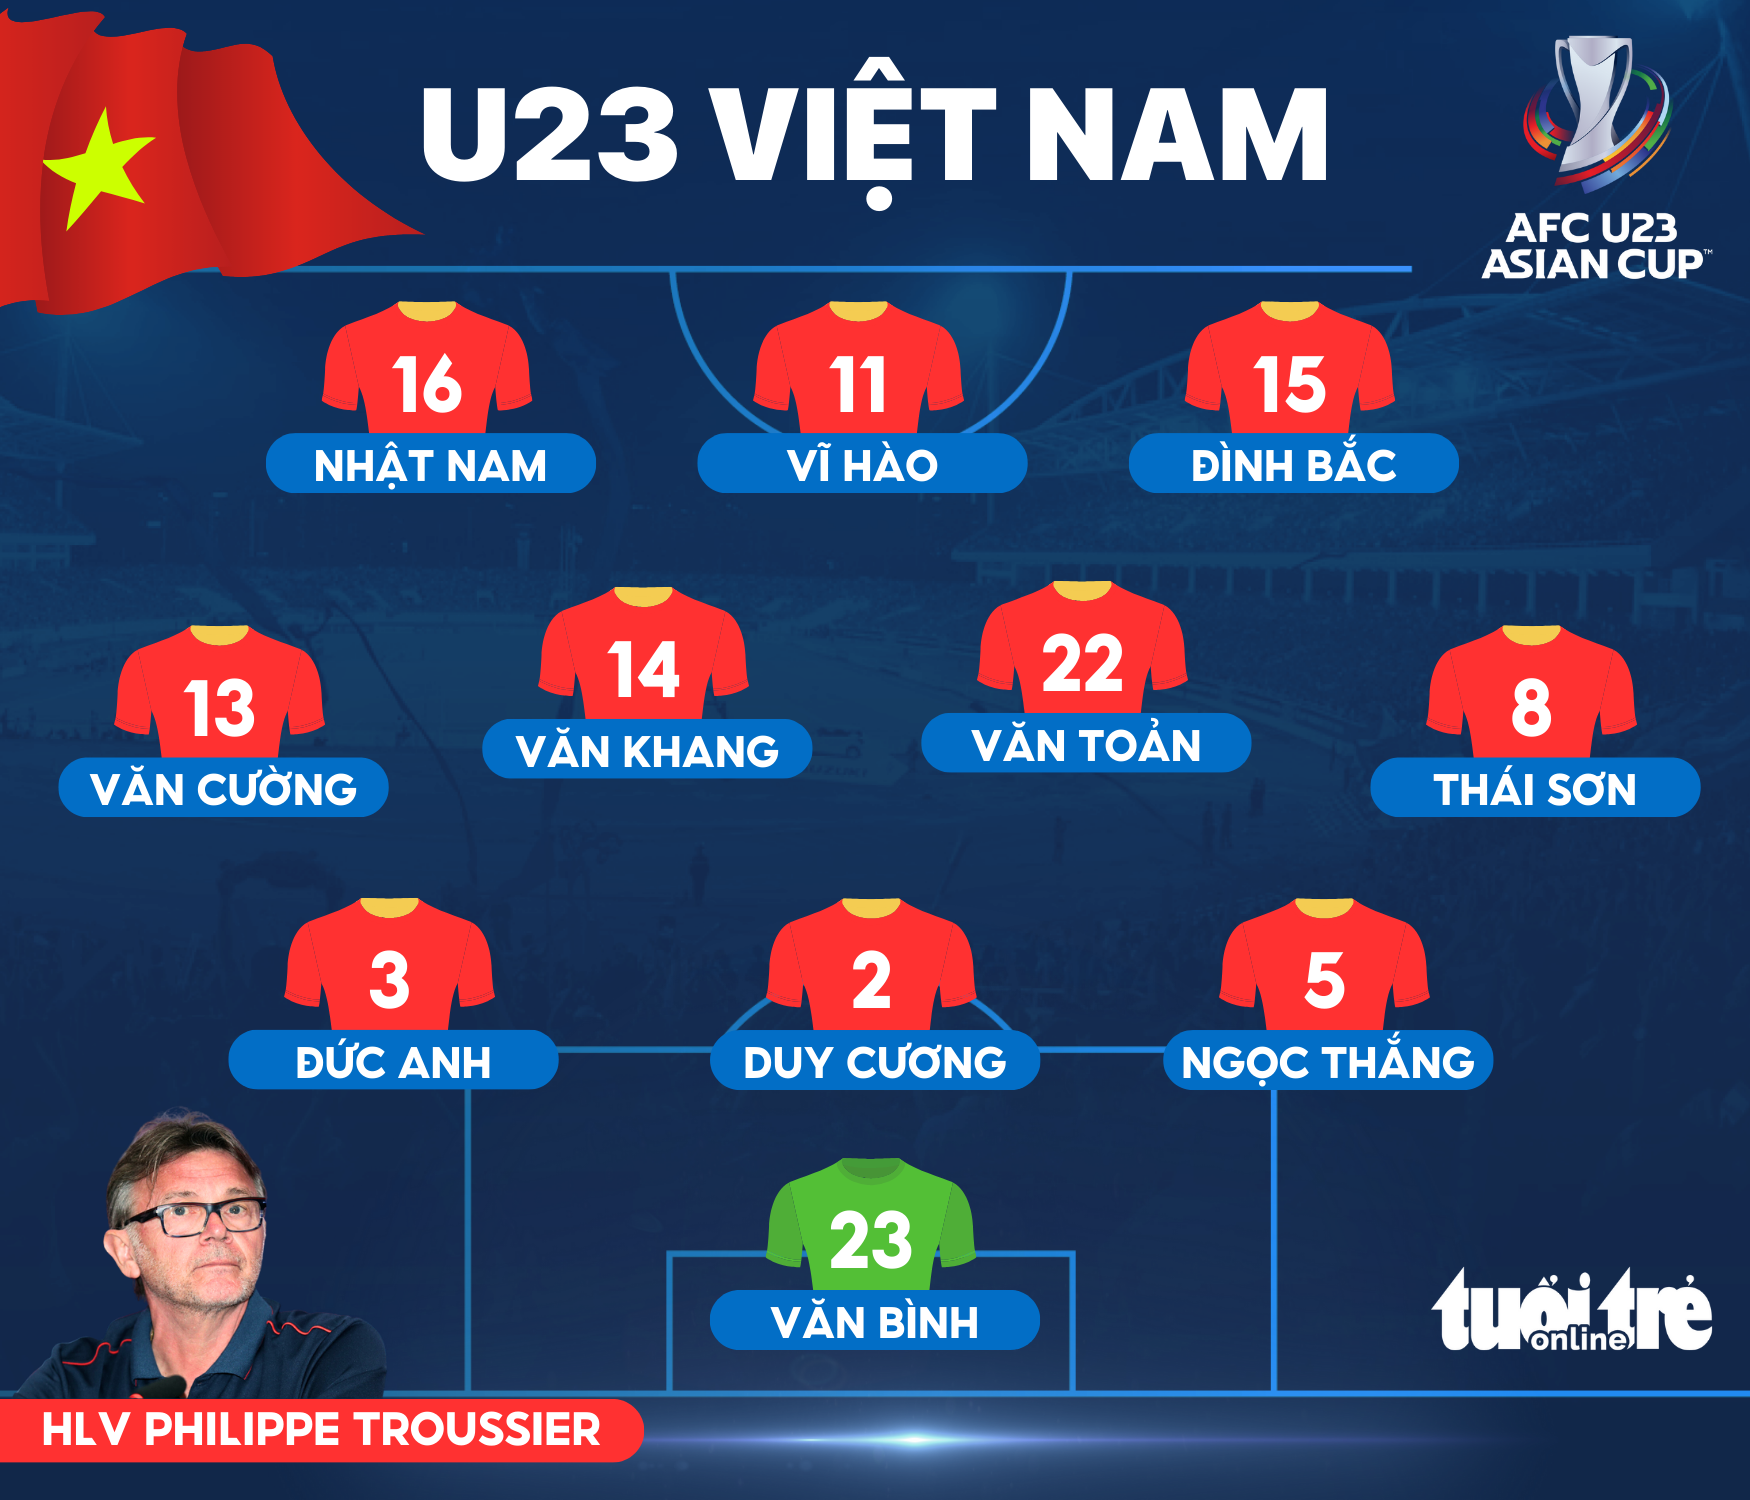 U23 Việt Nam hoà U23 Singapore 2-2 ở trận cầu mang tính thủ tục - Ảnh 3.